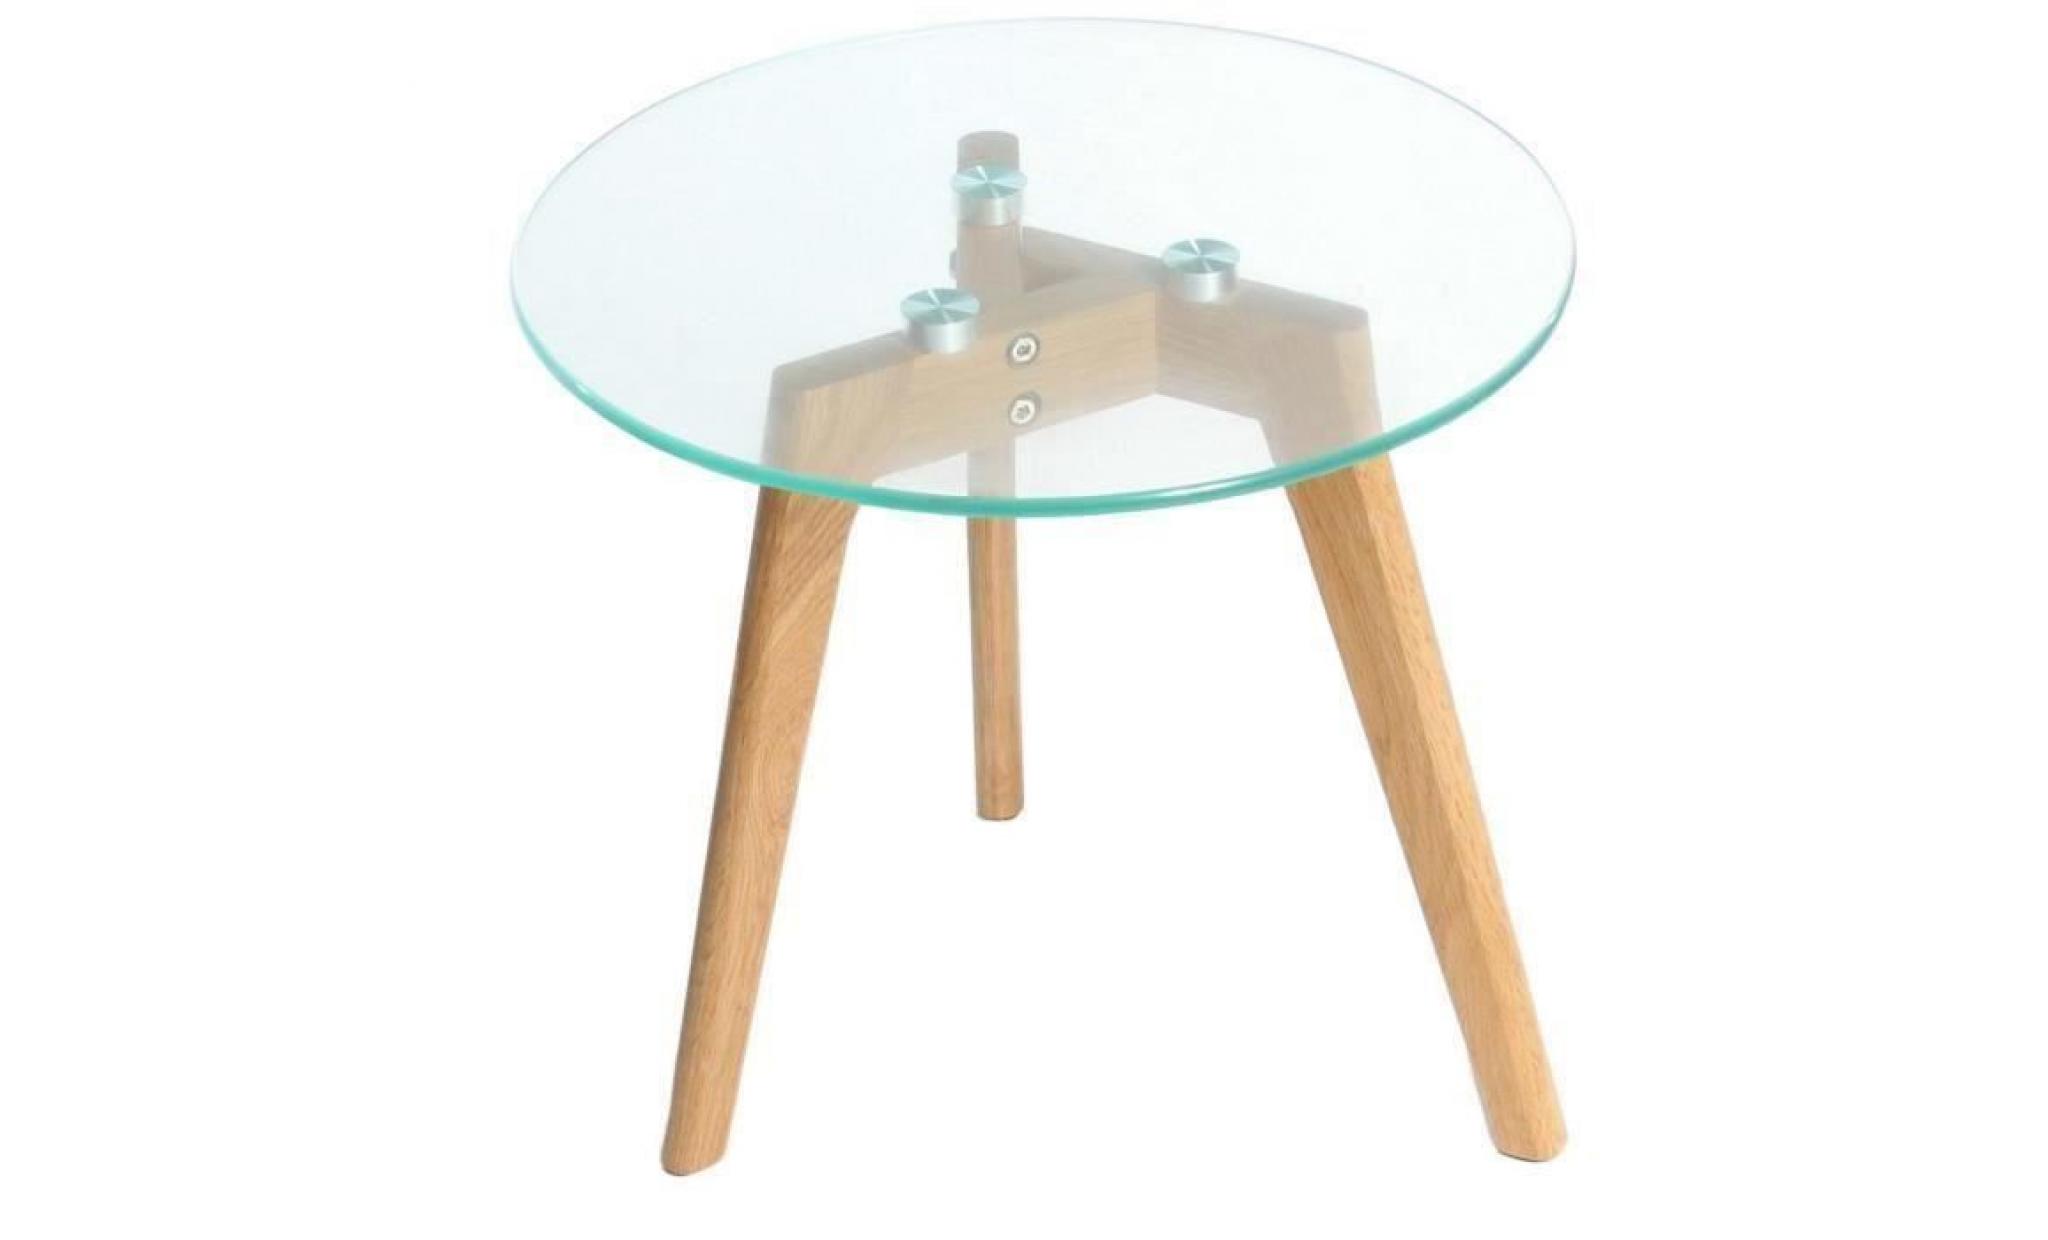 charles jacobs table d'appoint en verre ronde en verre table d'appoint en chêne massif pied en bois 60cm de diamètre pas cher